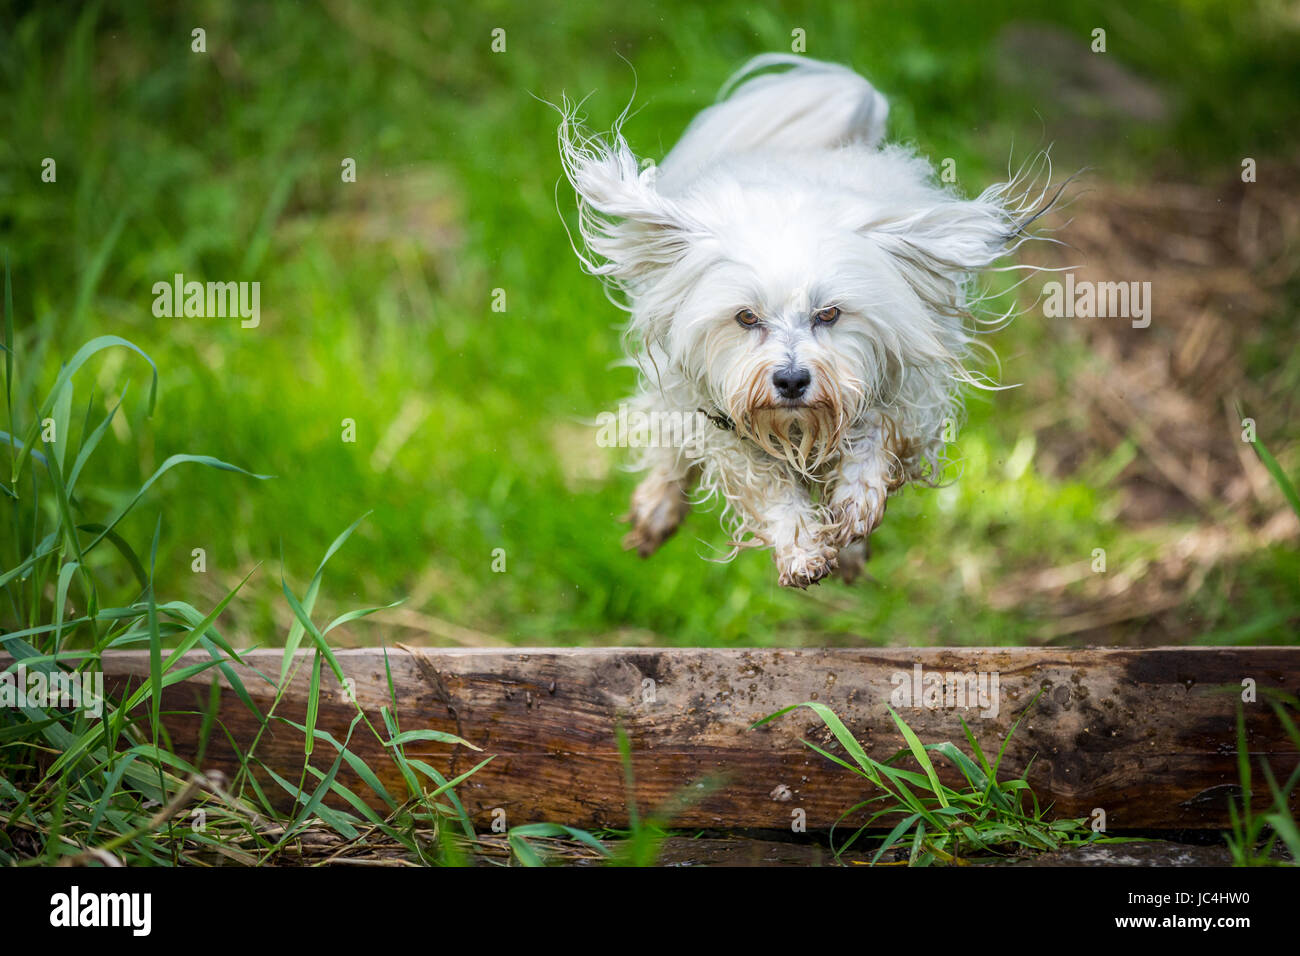 Kleiner weißer Hund springt über eine Baumstamm. Stock Photo